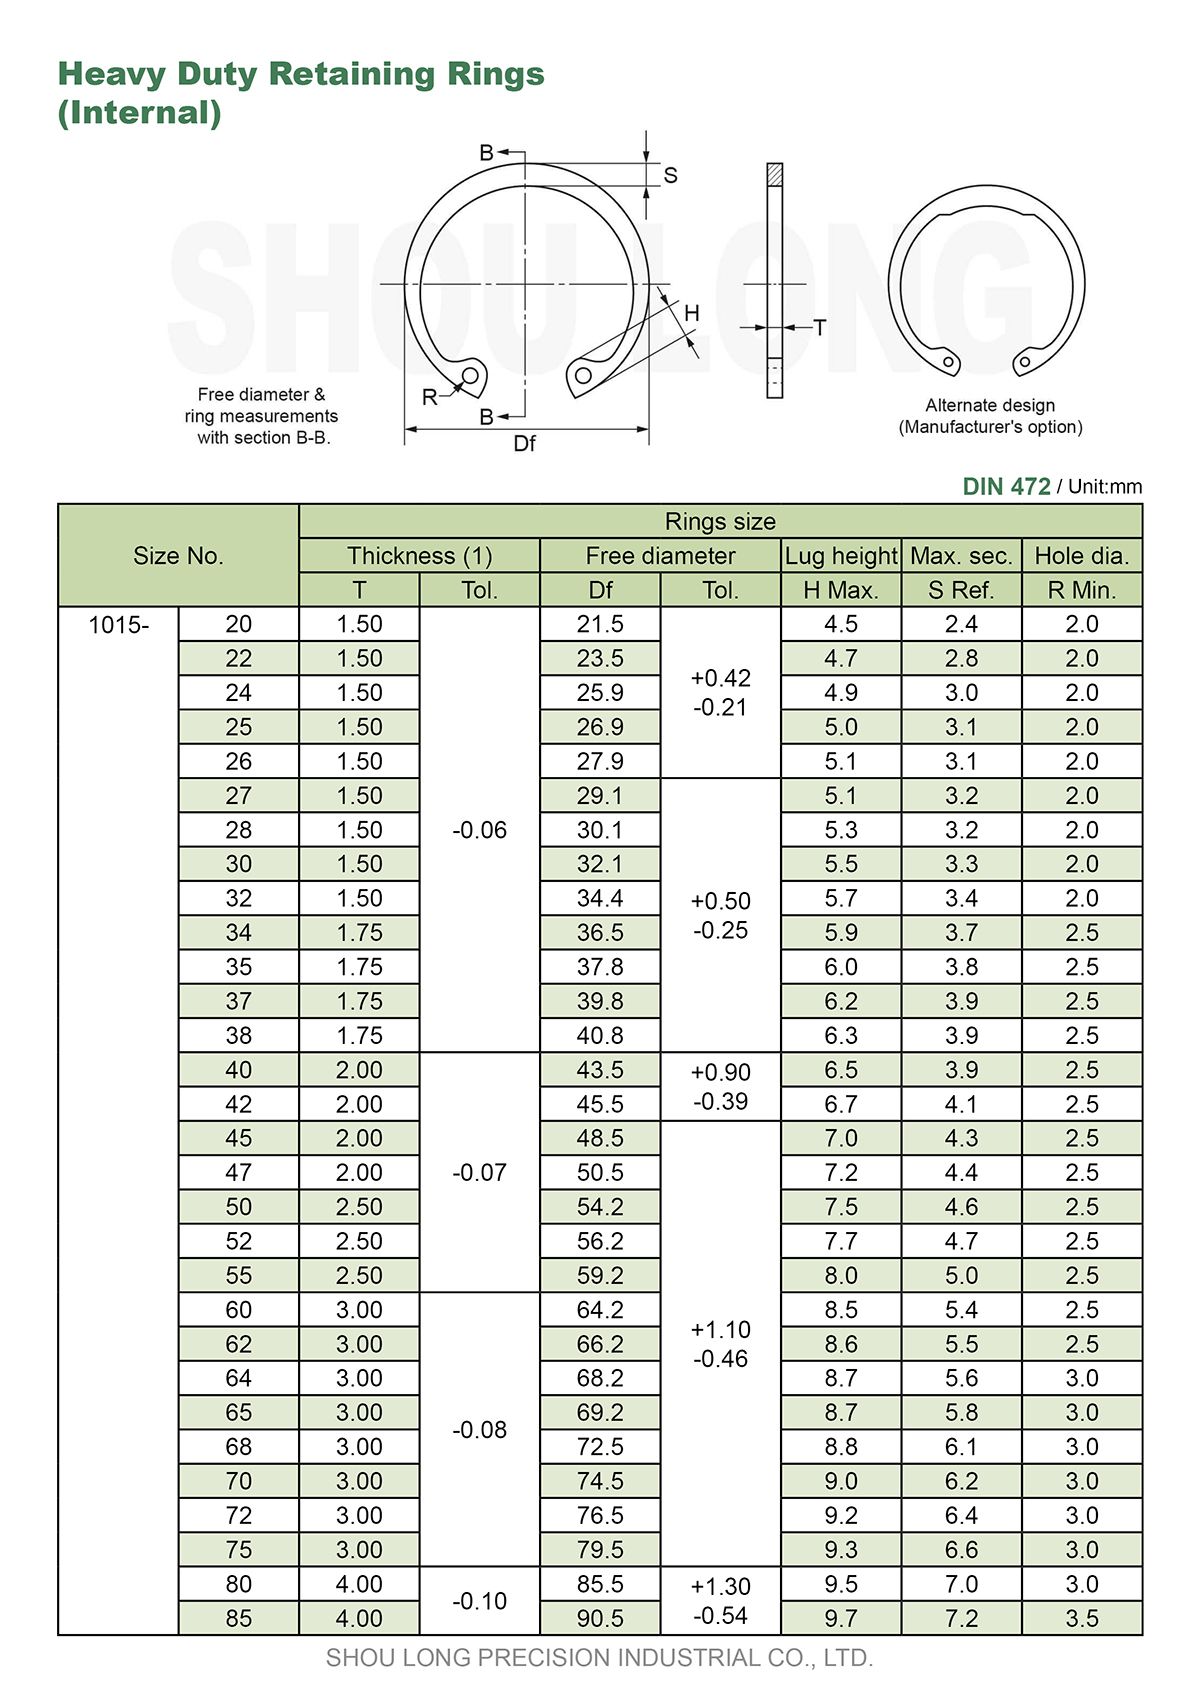 Especificação de Anéis de Retenção Pesados Métricos para Furos DIN472-1